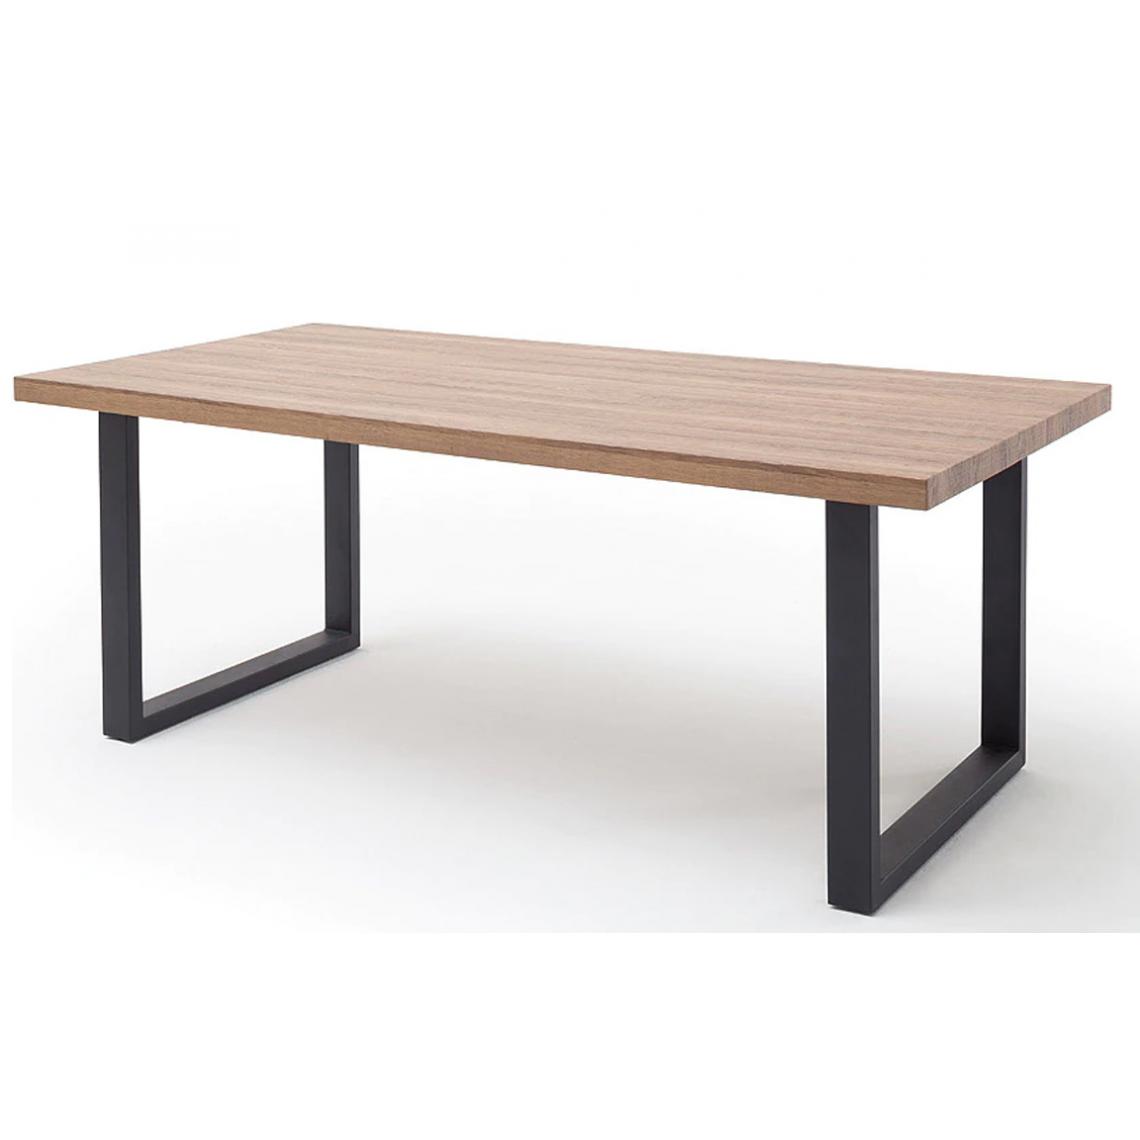 Pegane - Table à manger rectangulaire coloris chêne sauvage - L.160 x H.77 x P.90 cm - Tables à manger